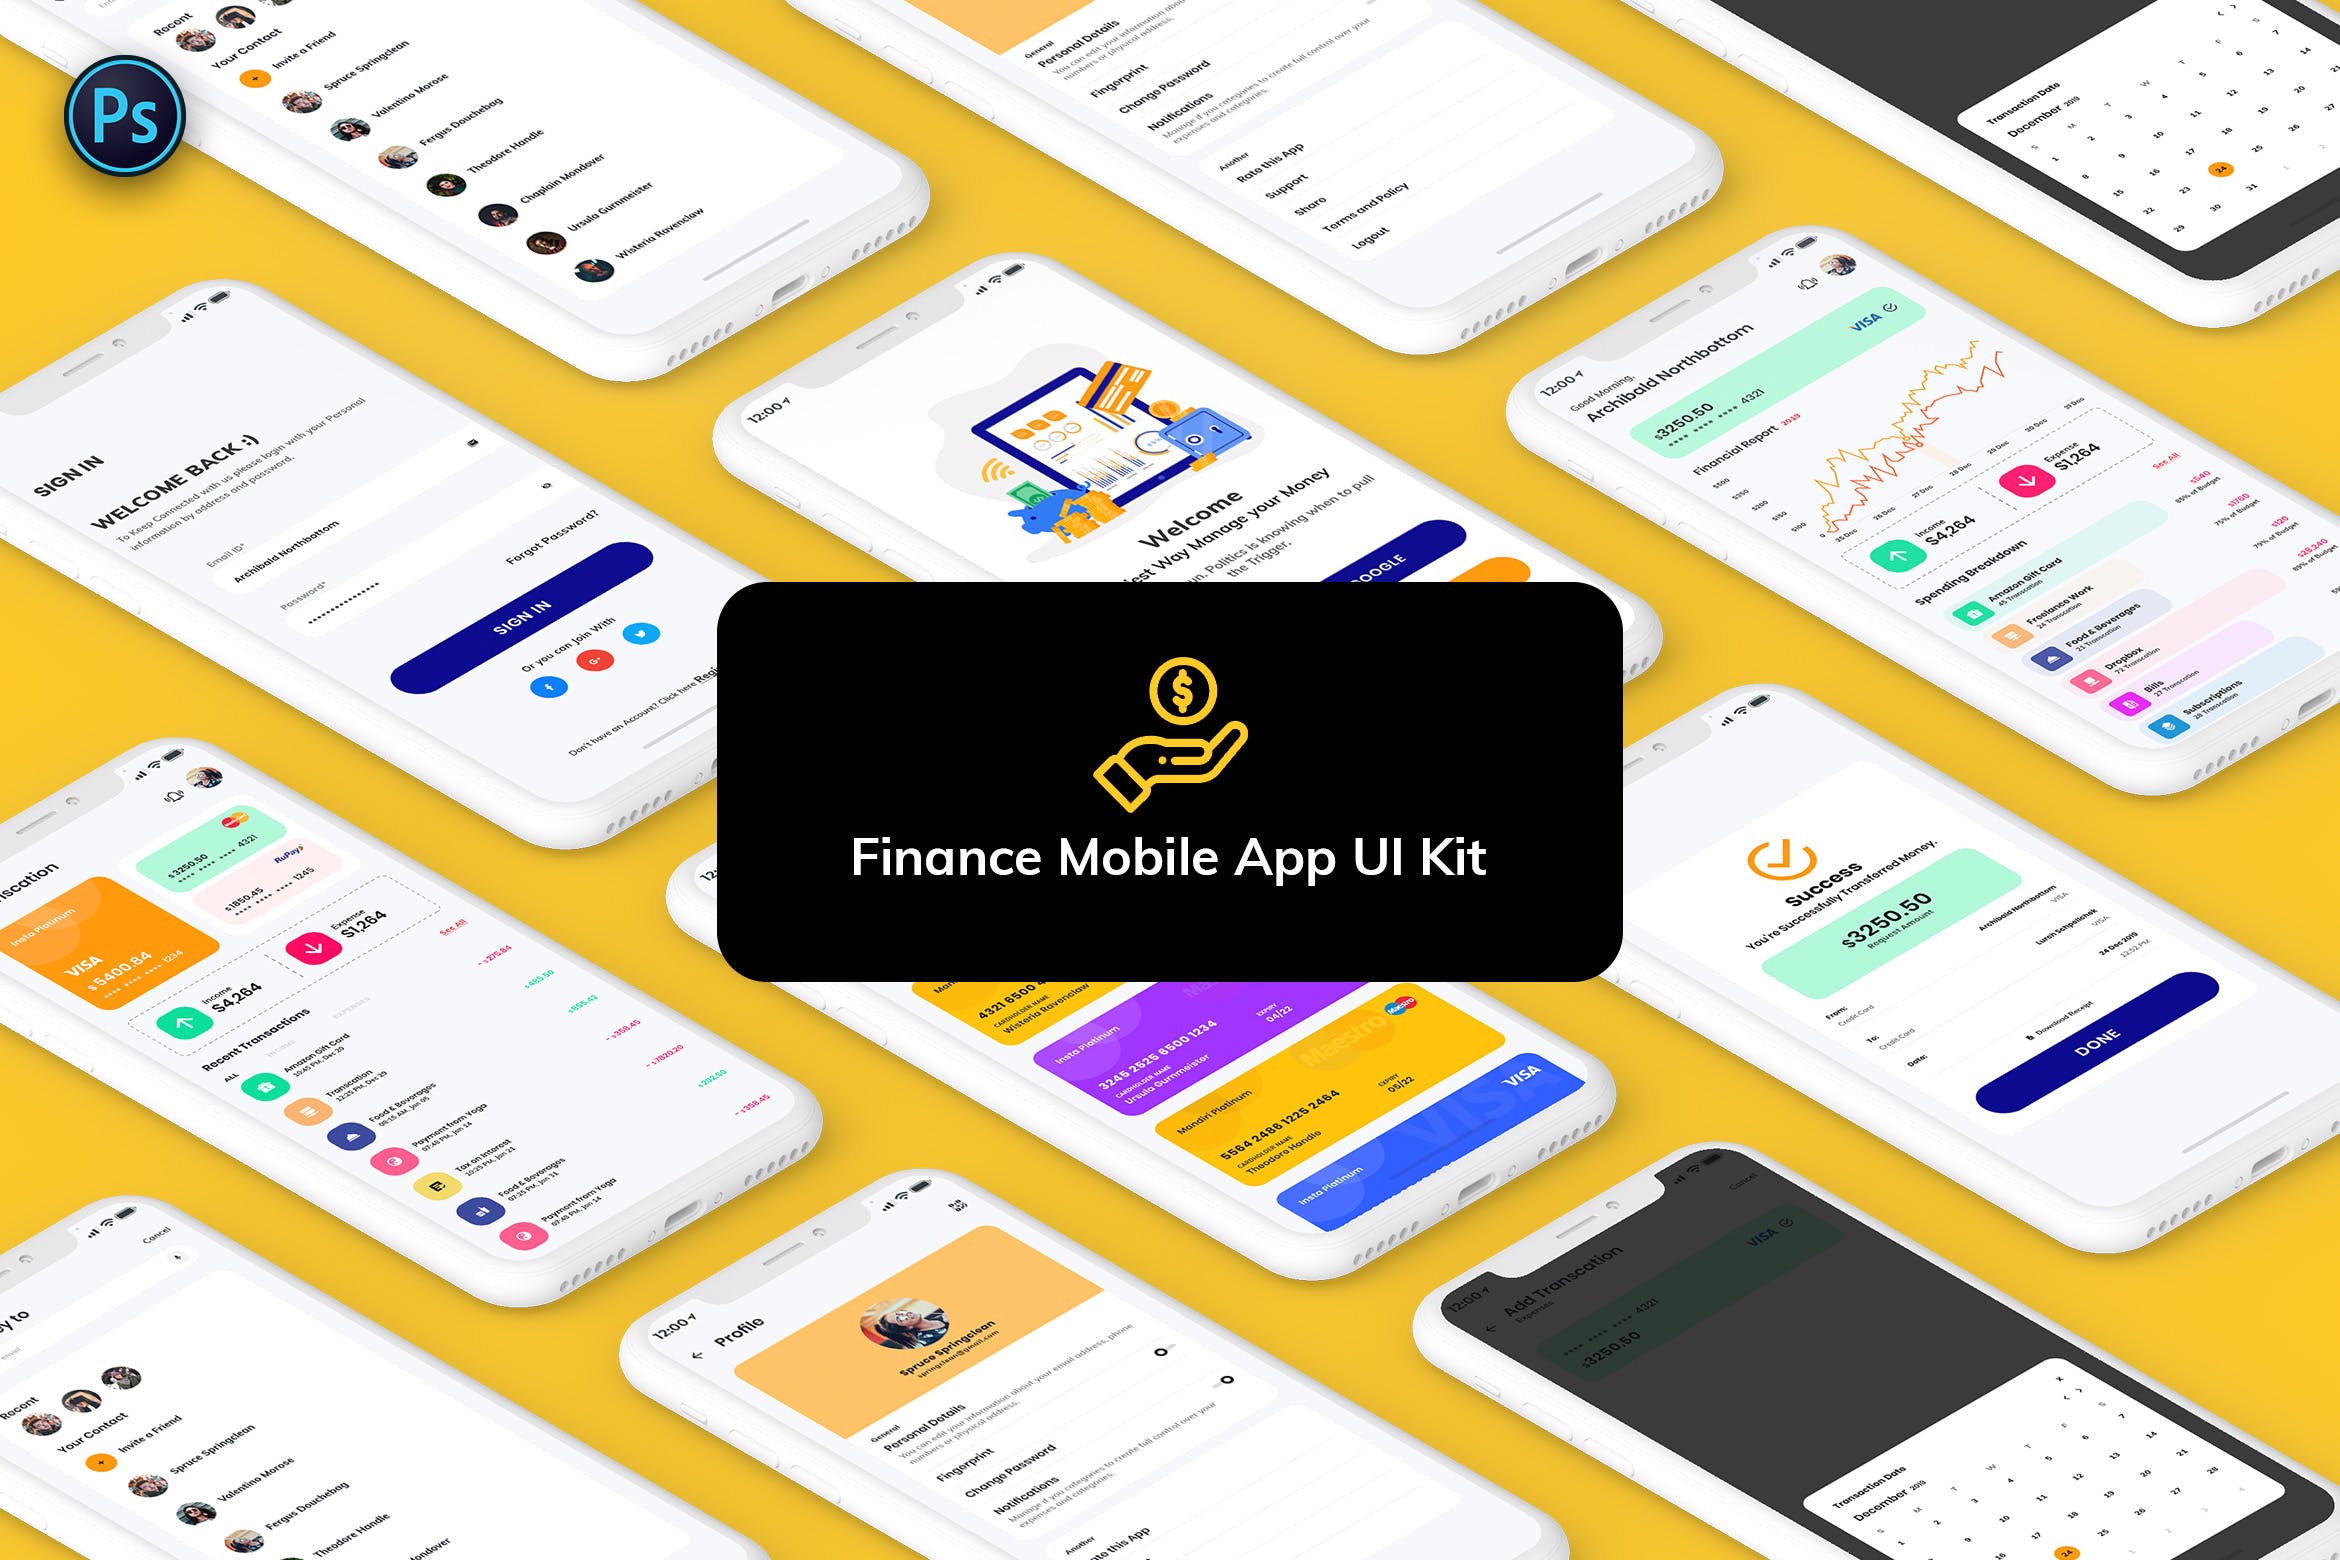 金融网上交易APP应用UI界面设计第一素材精选模板 Finance Mobile App Template UI Kit Light Version插图